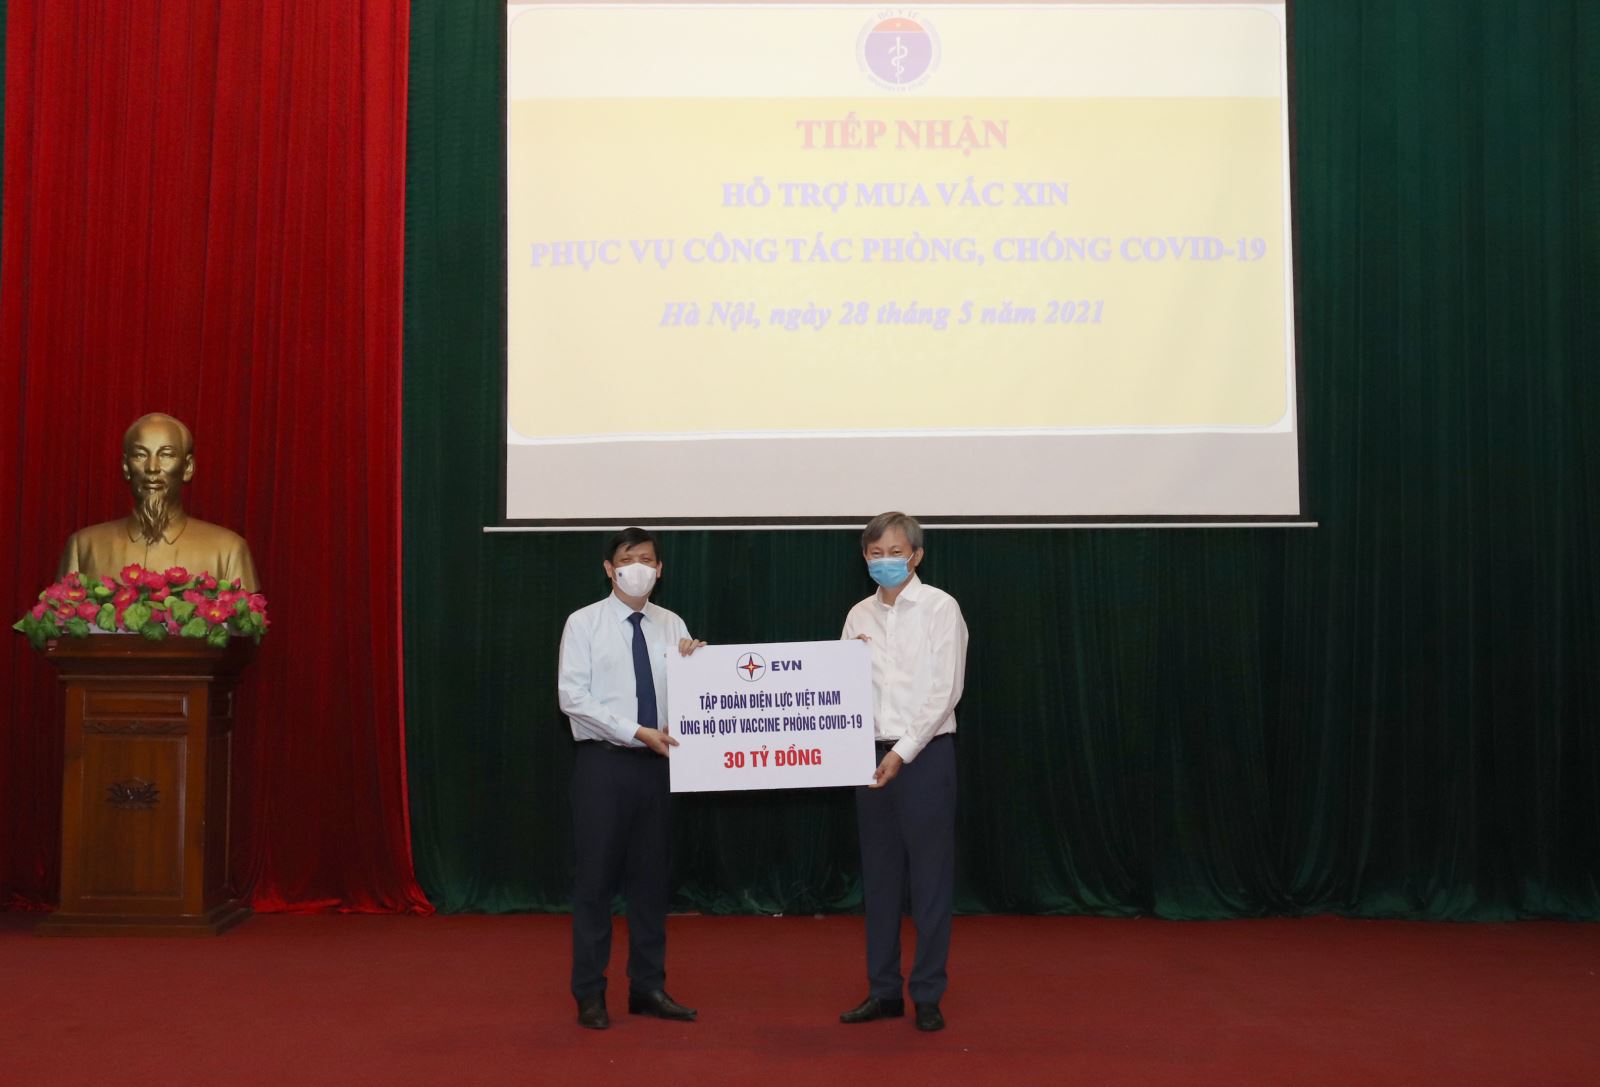 Ông Trần Đình Nhân, Tổng Giám đốc đã trao tặng 30 tỷ đồng để ủng hộ Quỹ vaccine phòng COVID-19 tới Bộ trưởng Bộ Y tế Nguyễn Thanh Long.